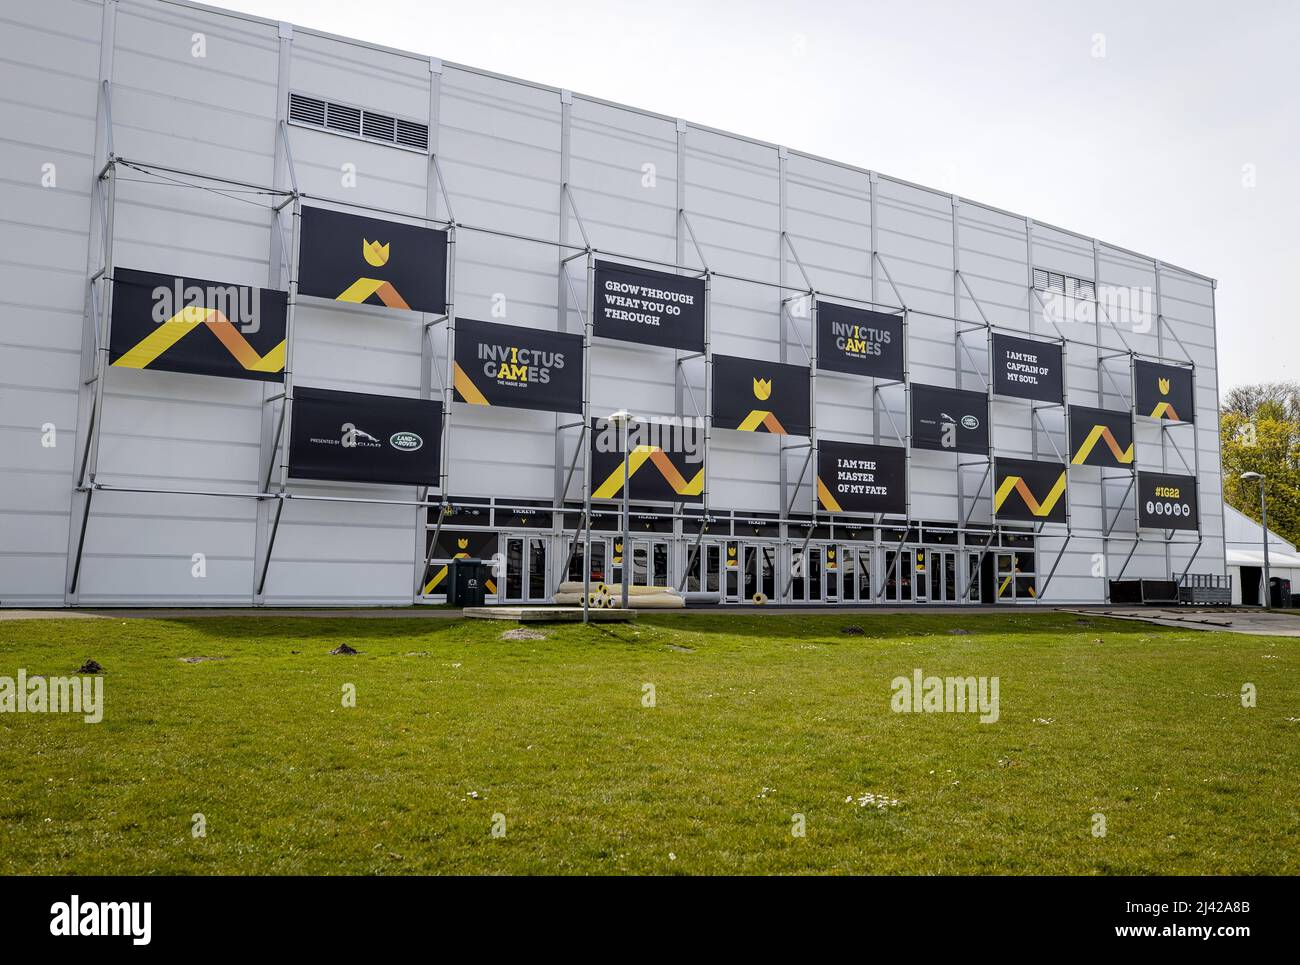 2022-04-11 15:27:47 DEN HAAG - das Stadion der Invictus Games wird im Zuiderpark in Den Haag gebaut. Diese internationale Multisportveranstaltung ist für Militärangehörige und Veteranen gedacht, die im Militär psychisch oder körperlich verletzt wurden. ANP SEM VAN DER WAL niederlande Out - belgien Out Stockfoto